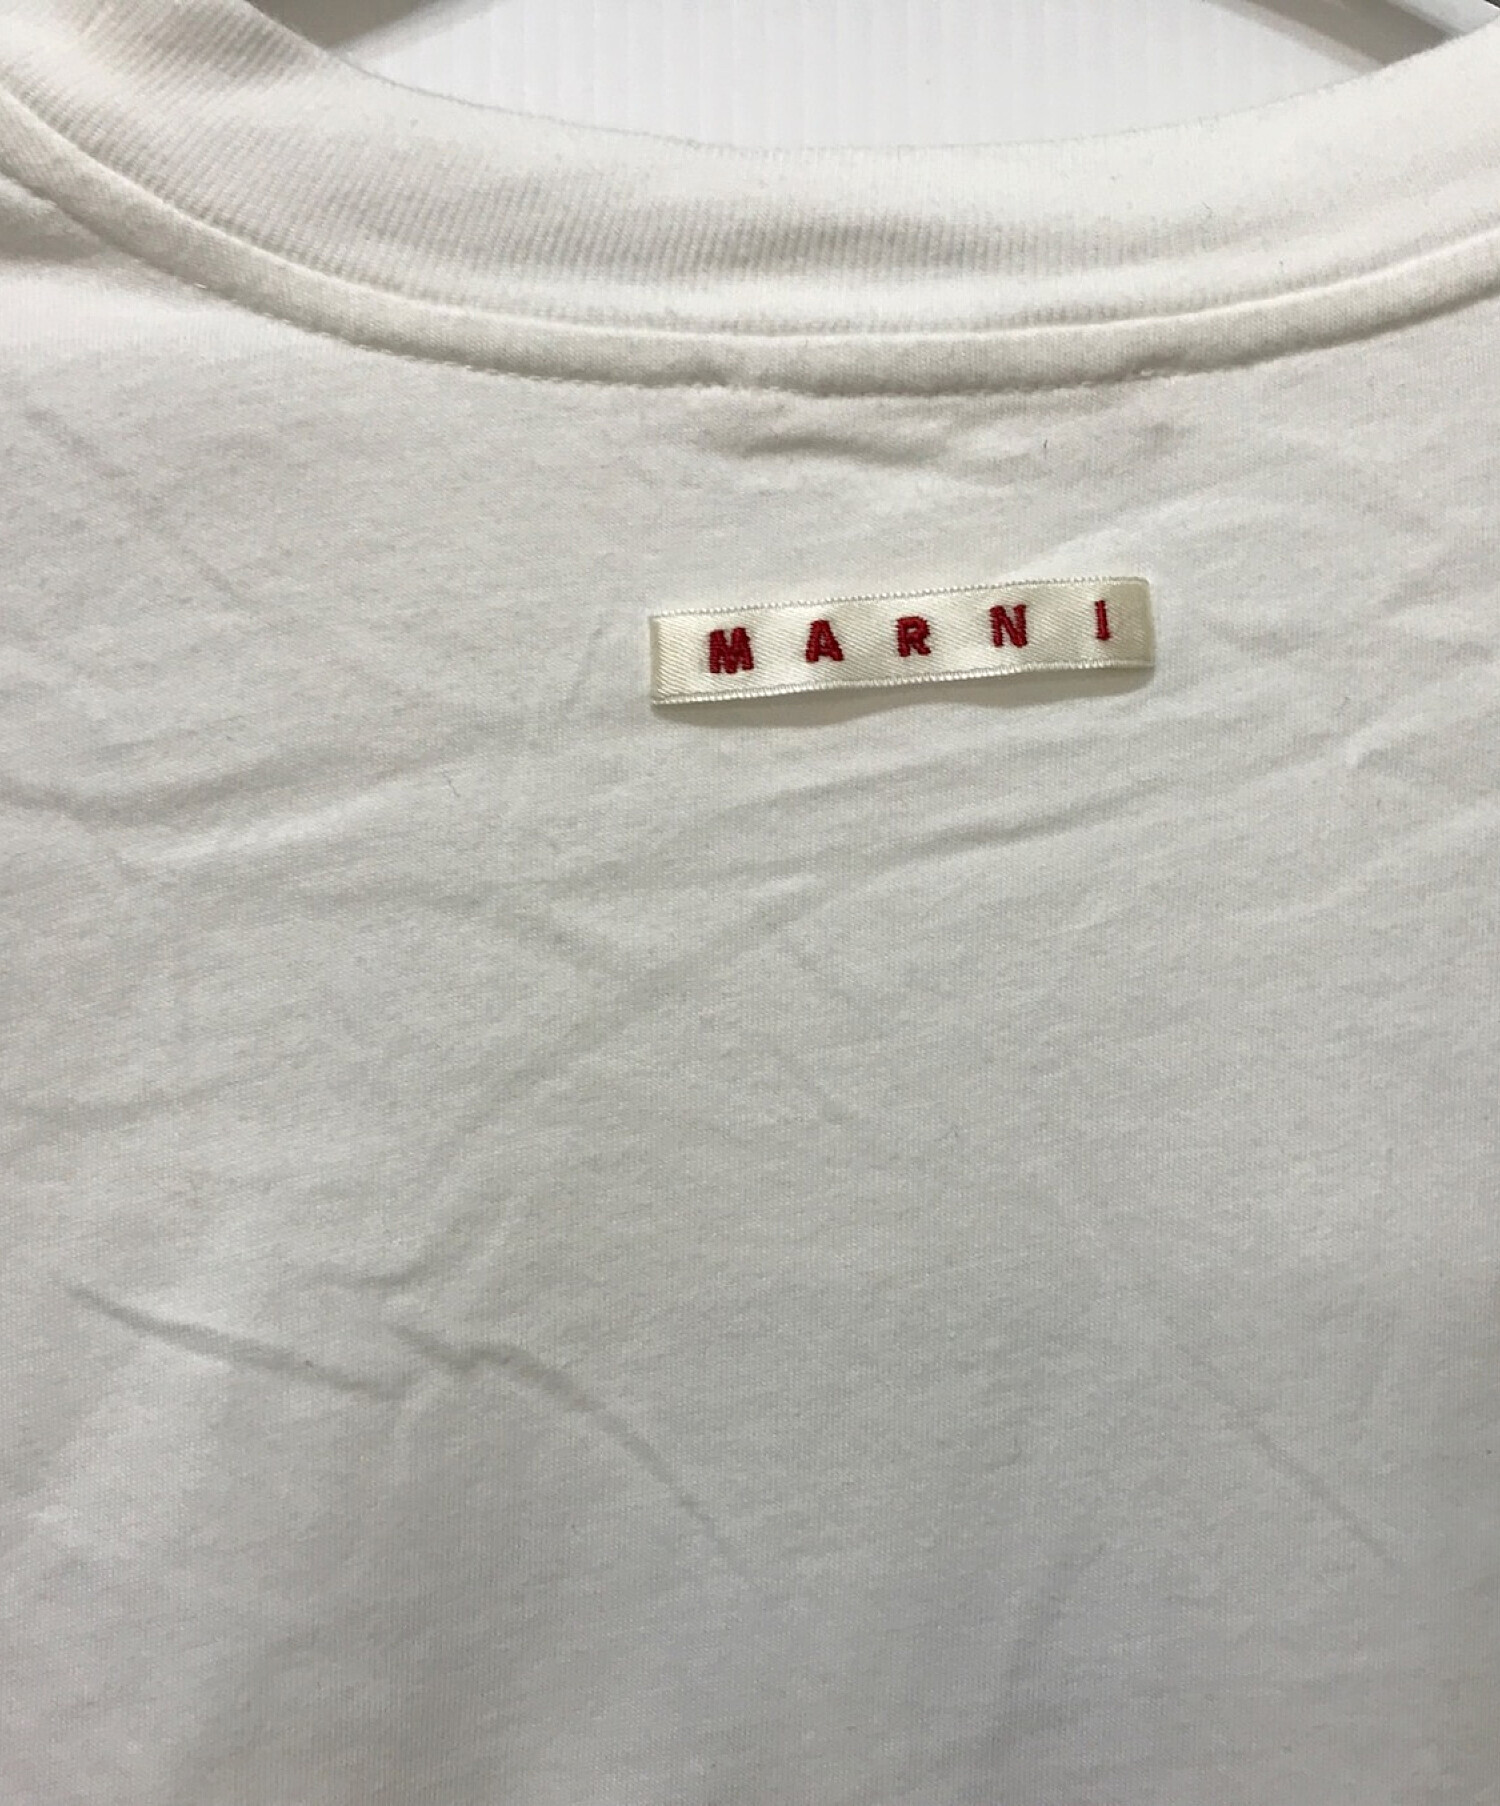 MARNI (マルニ) ロゴプリントTシャツ ホワイト サイズ:38